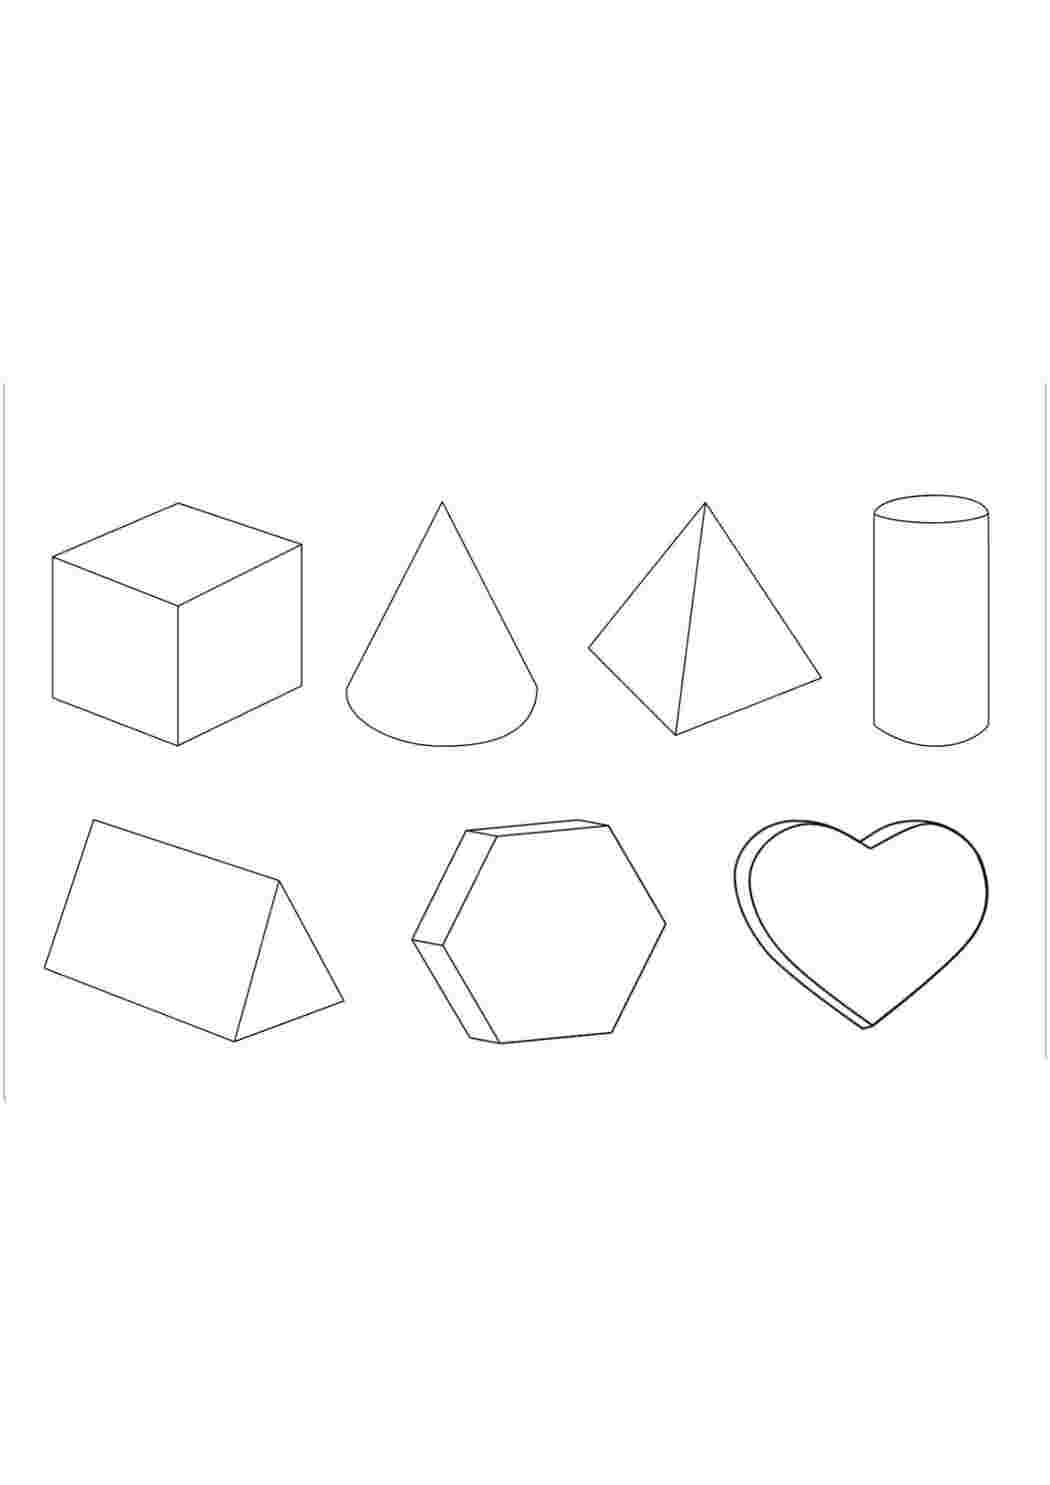 Аппликации из геометрических фигур для детей — идеи и шаблоны